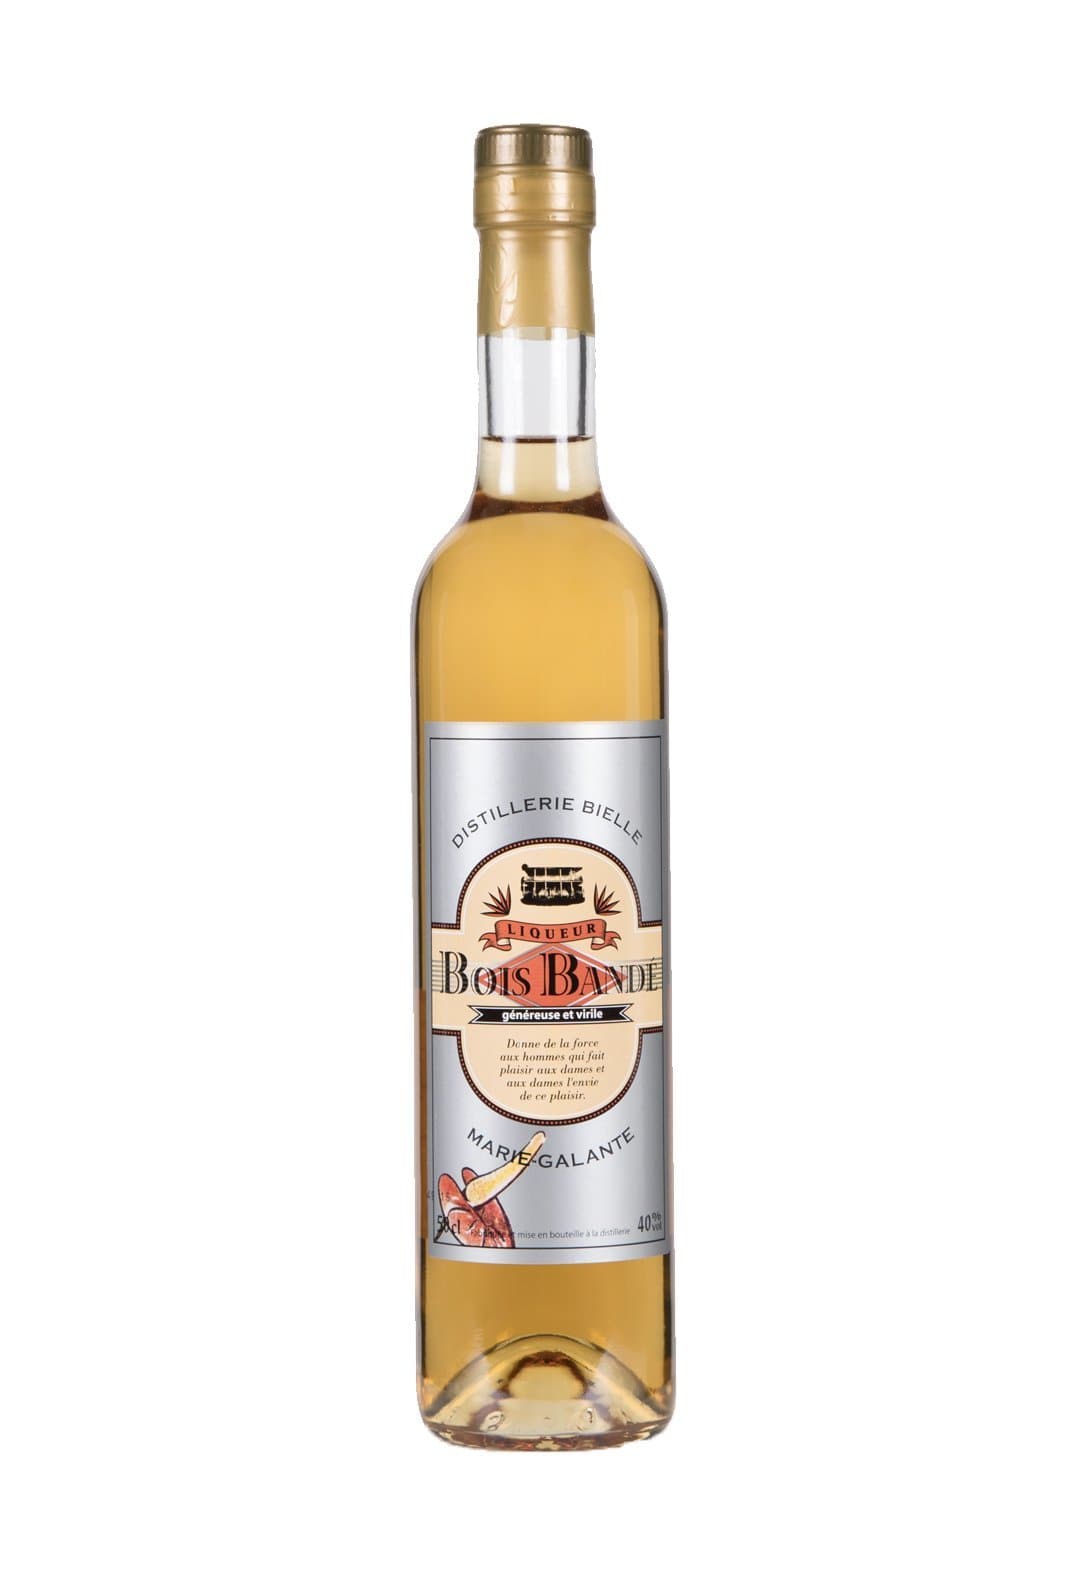 Bielle Liqueur de Rhum 'Bois Bande' (Agricole rum liqueur) 40% 500ml | Liqueurs | Shop online at Spirits of France